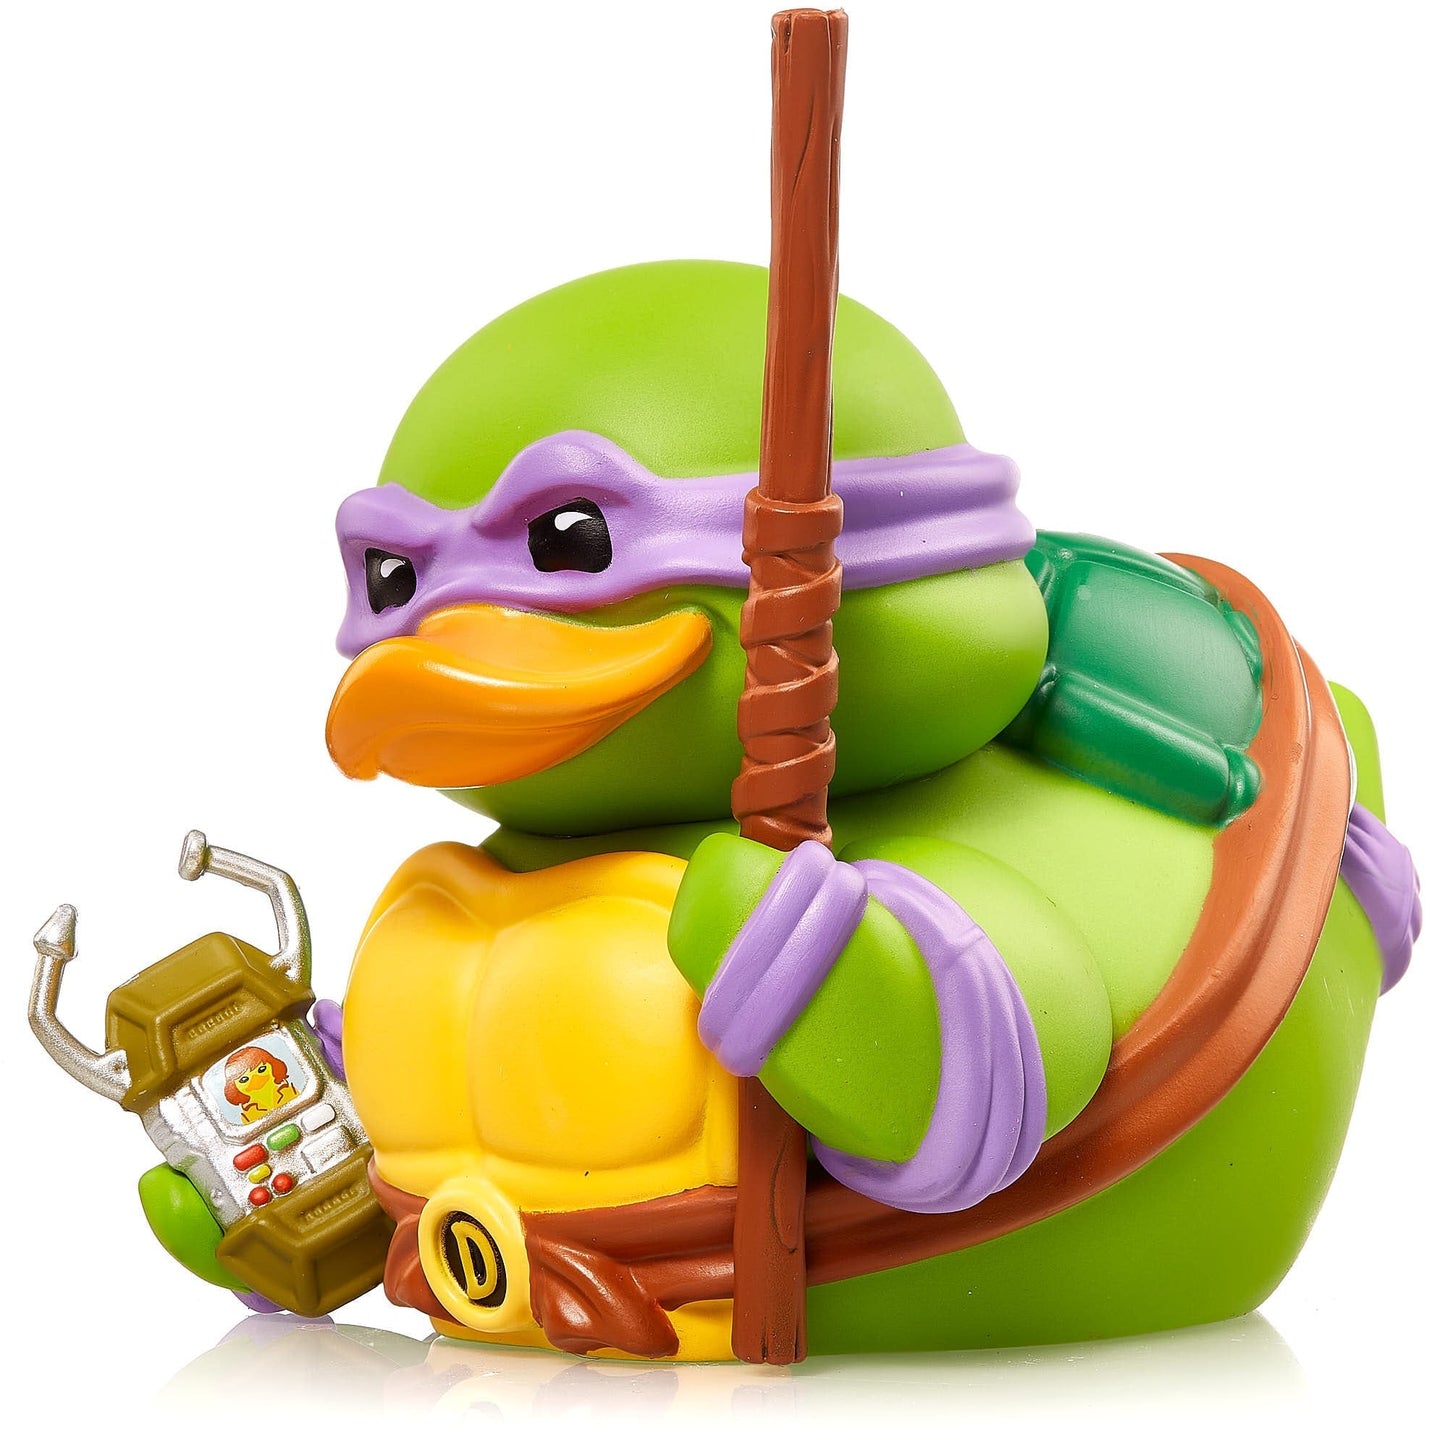 Duck Donatello